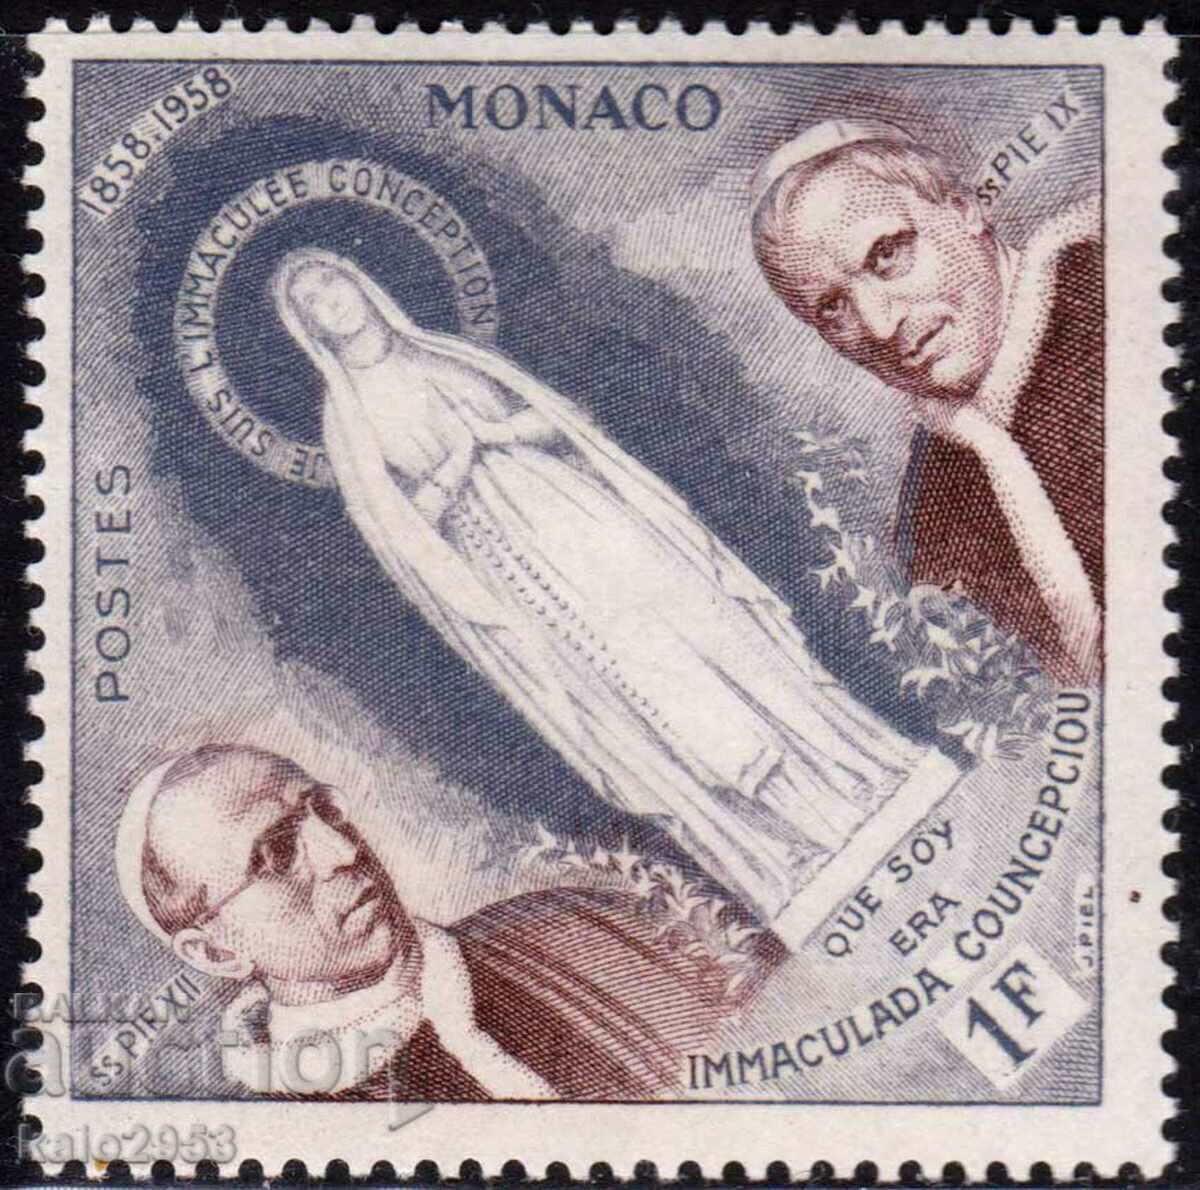 Monaco-1958-Religious Jubilee, MLH